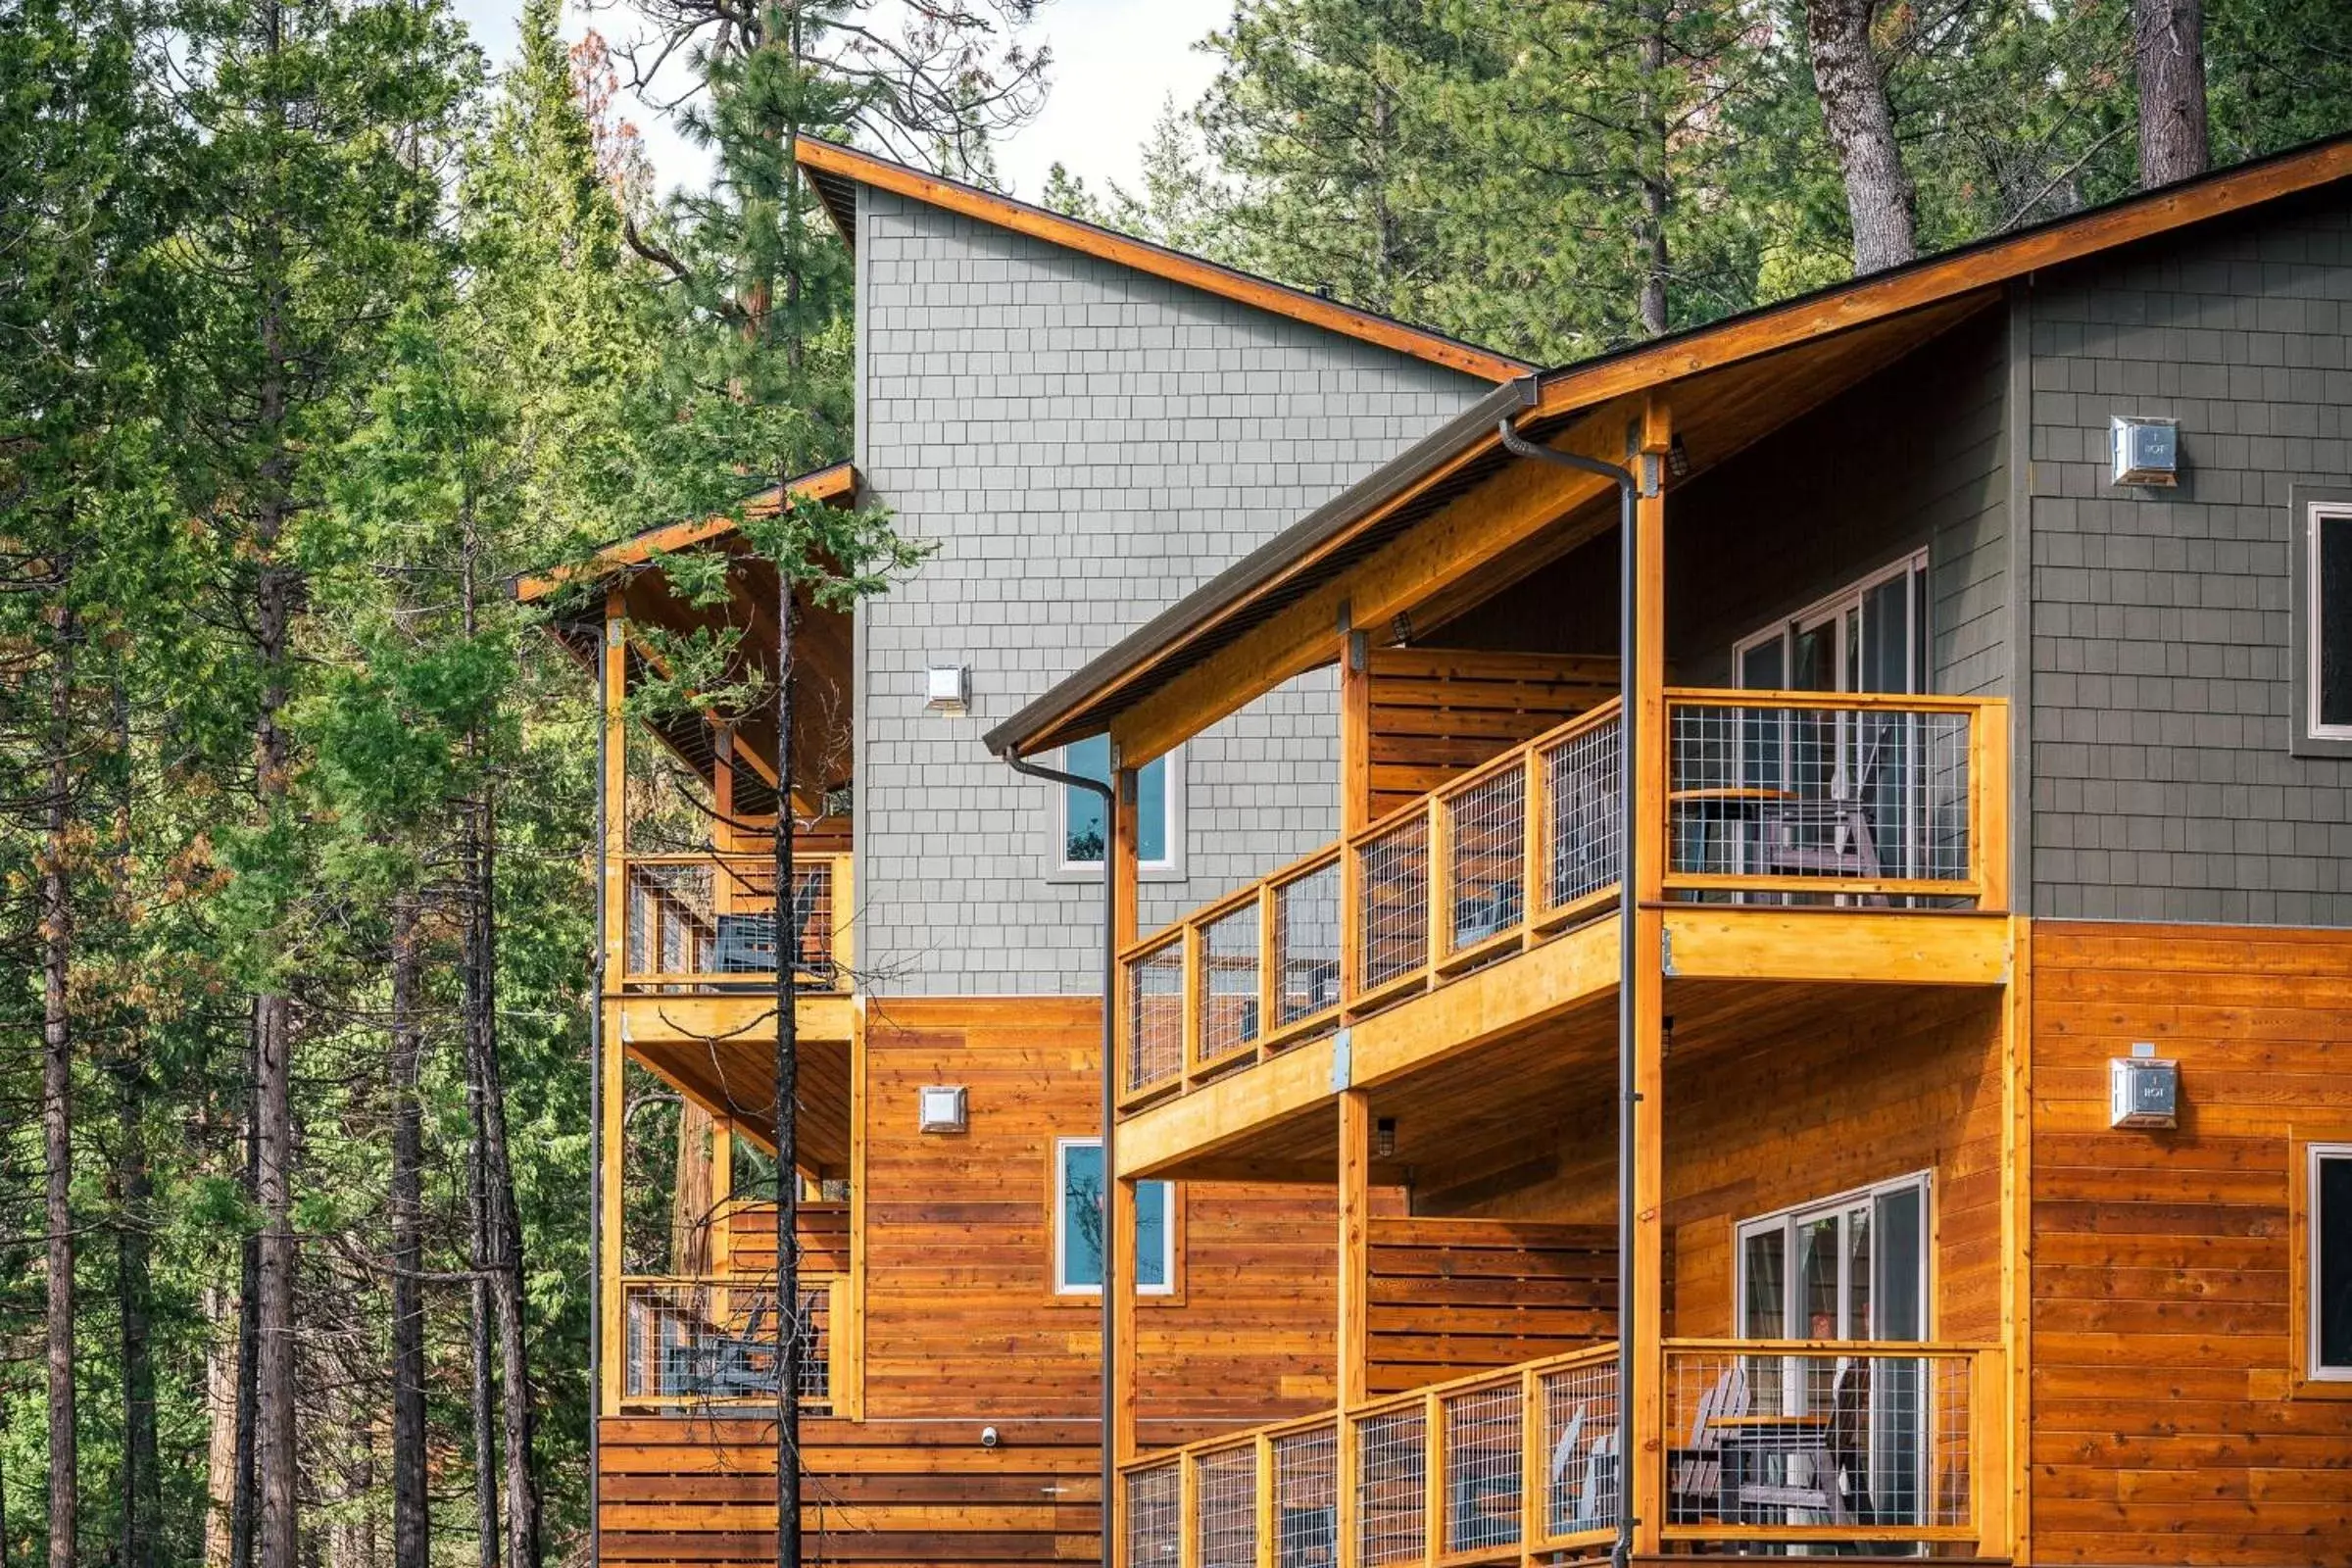 Property Building in Rush Creek Lodge at Yosemite